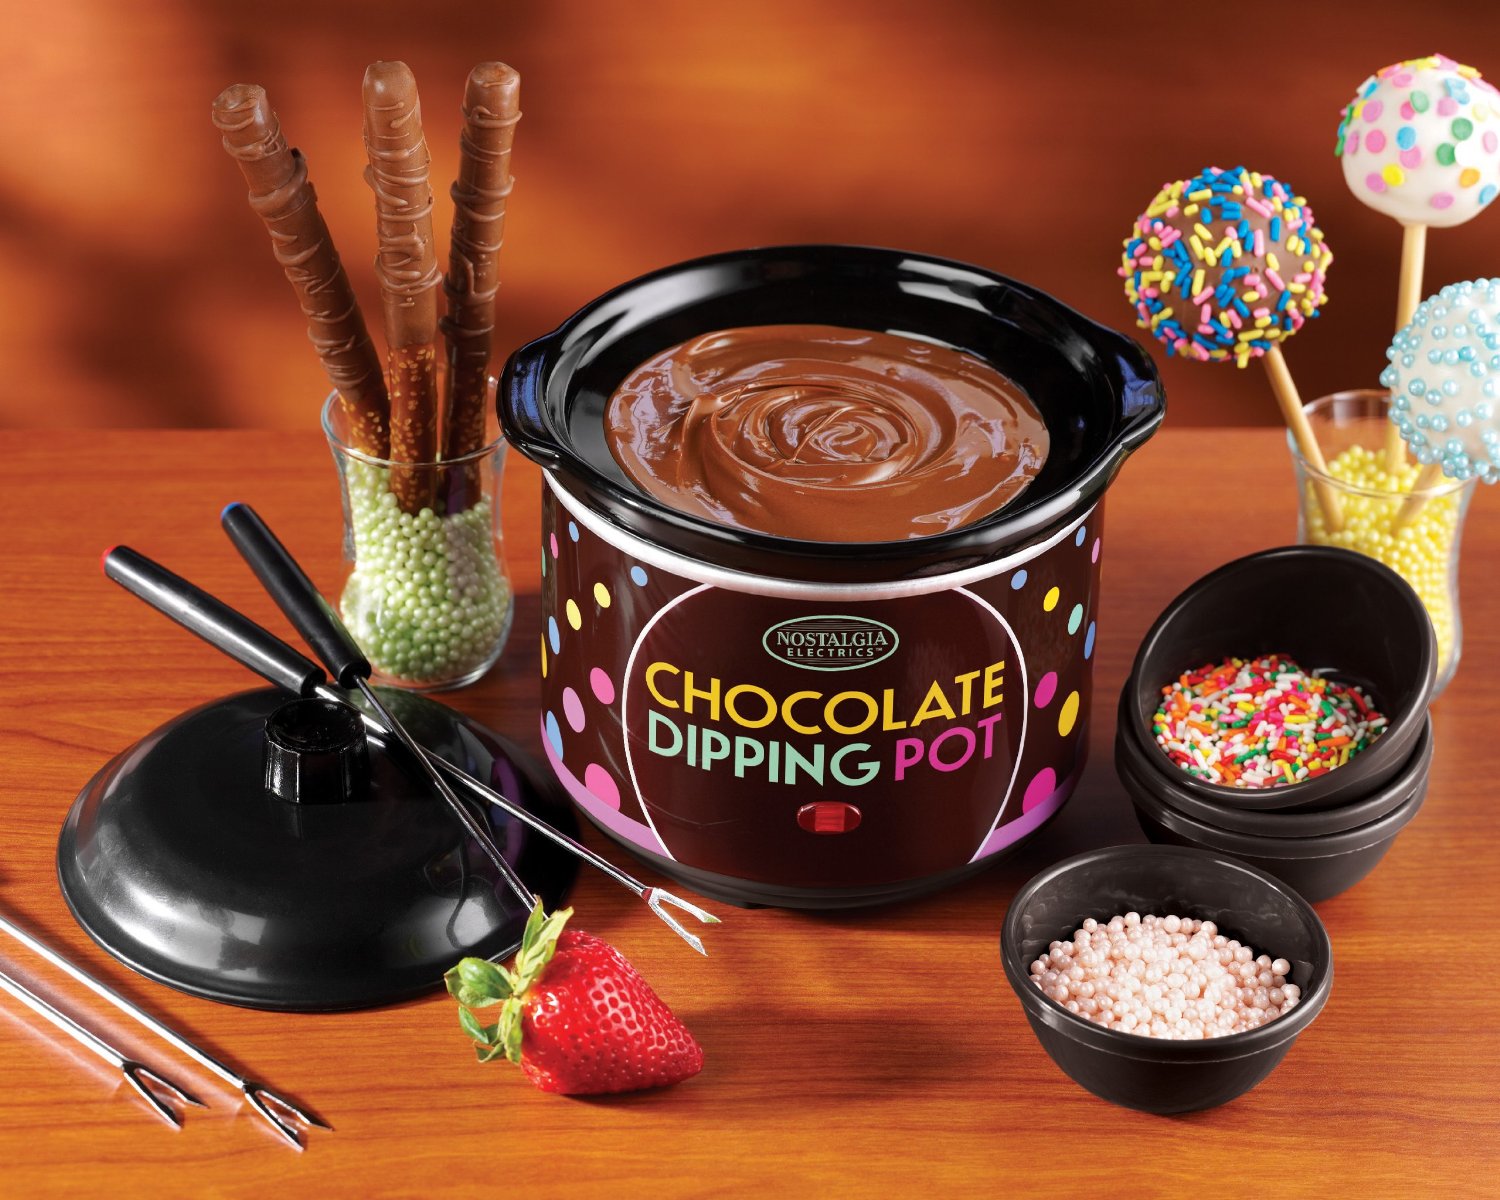 Chocolate Dipping Pot